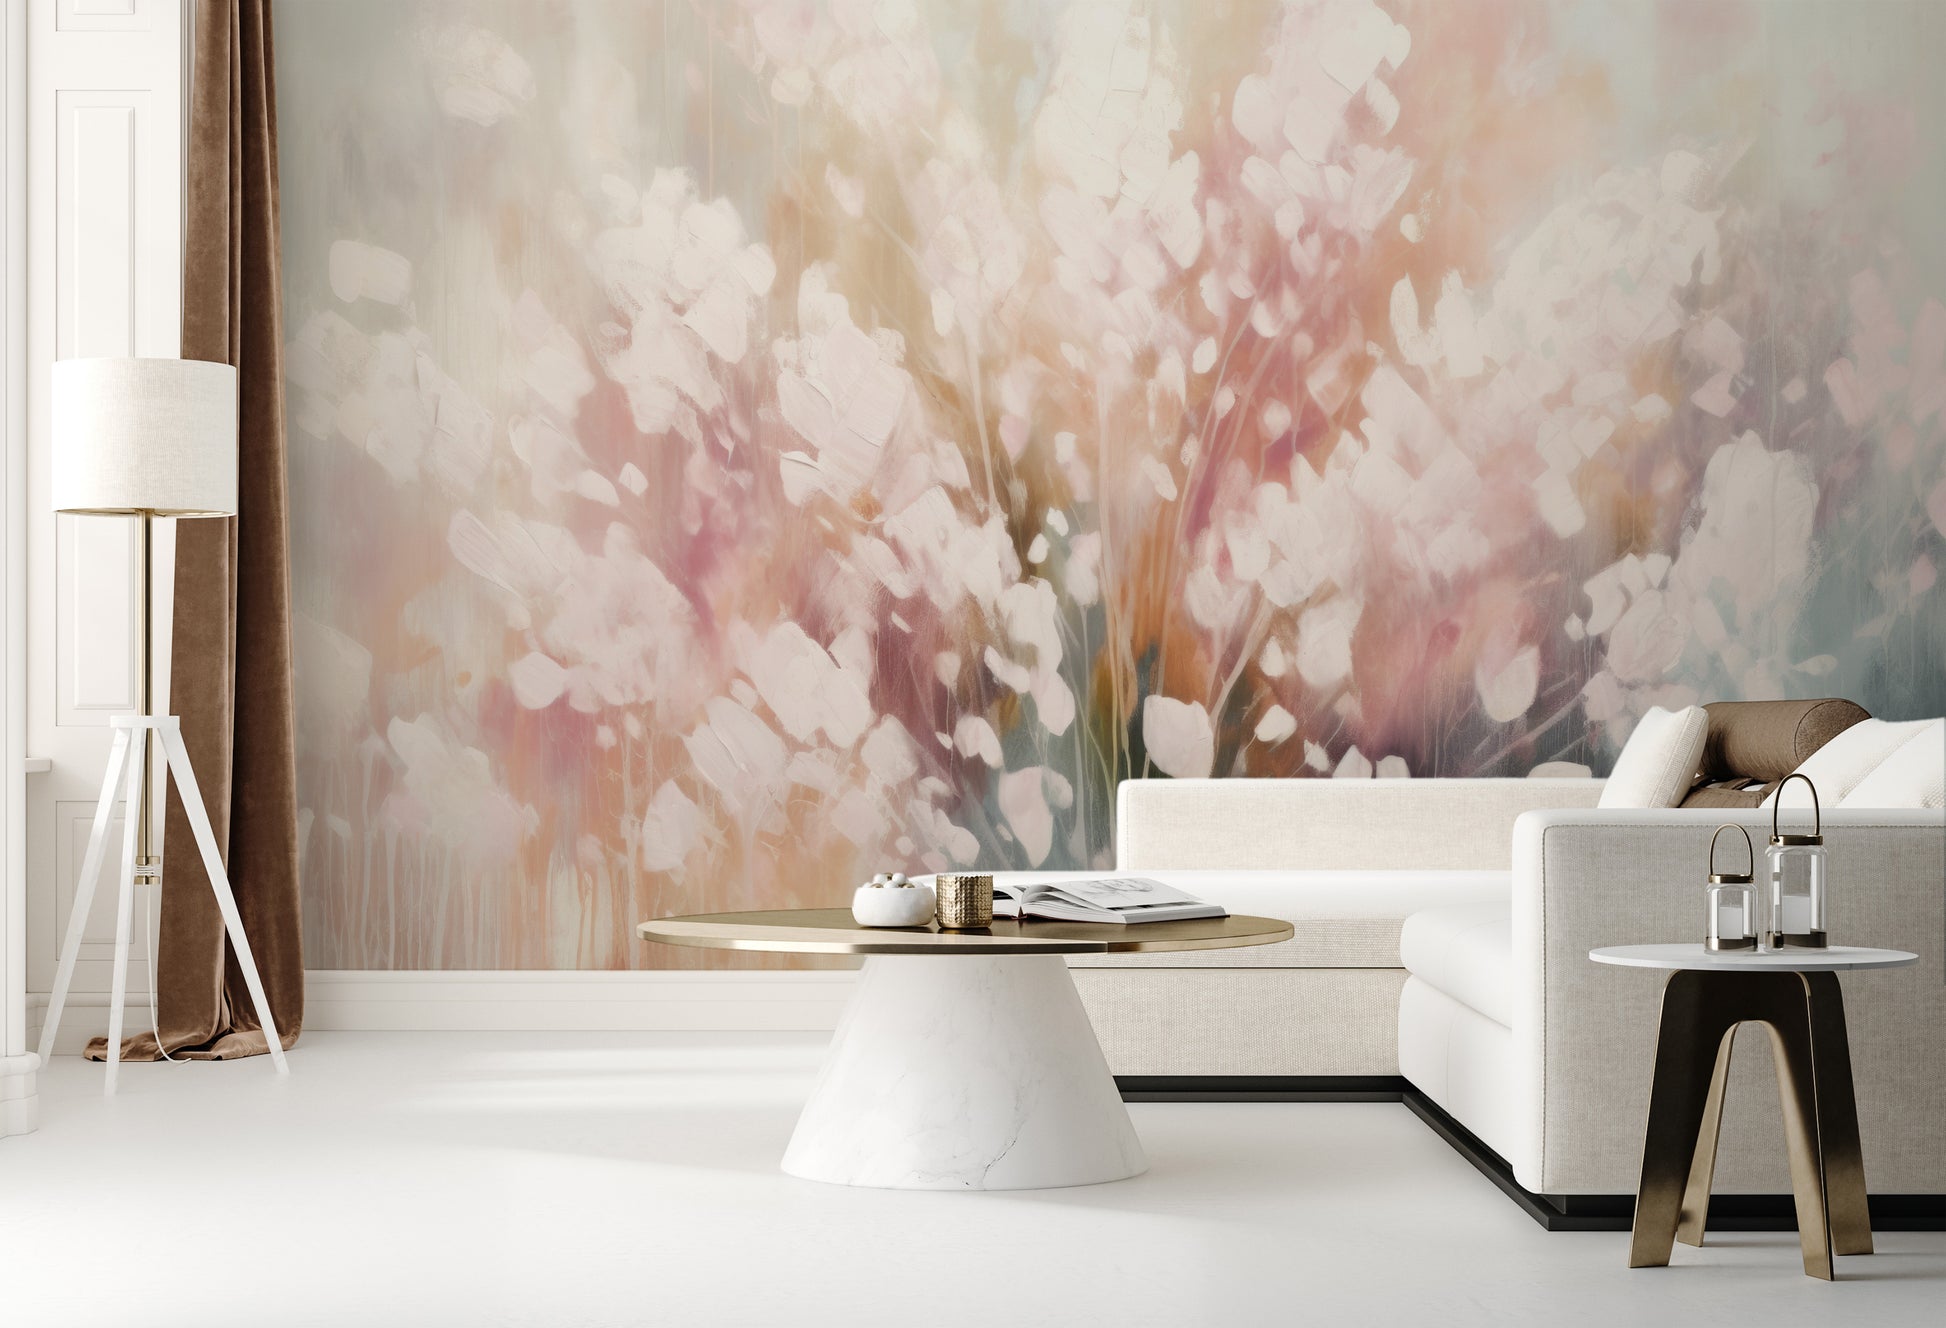 Wzór fototapety malowanej o nazwie Ethereal White Blossom pokazanej w aranżacji wnętrza.